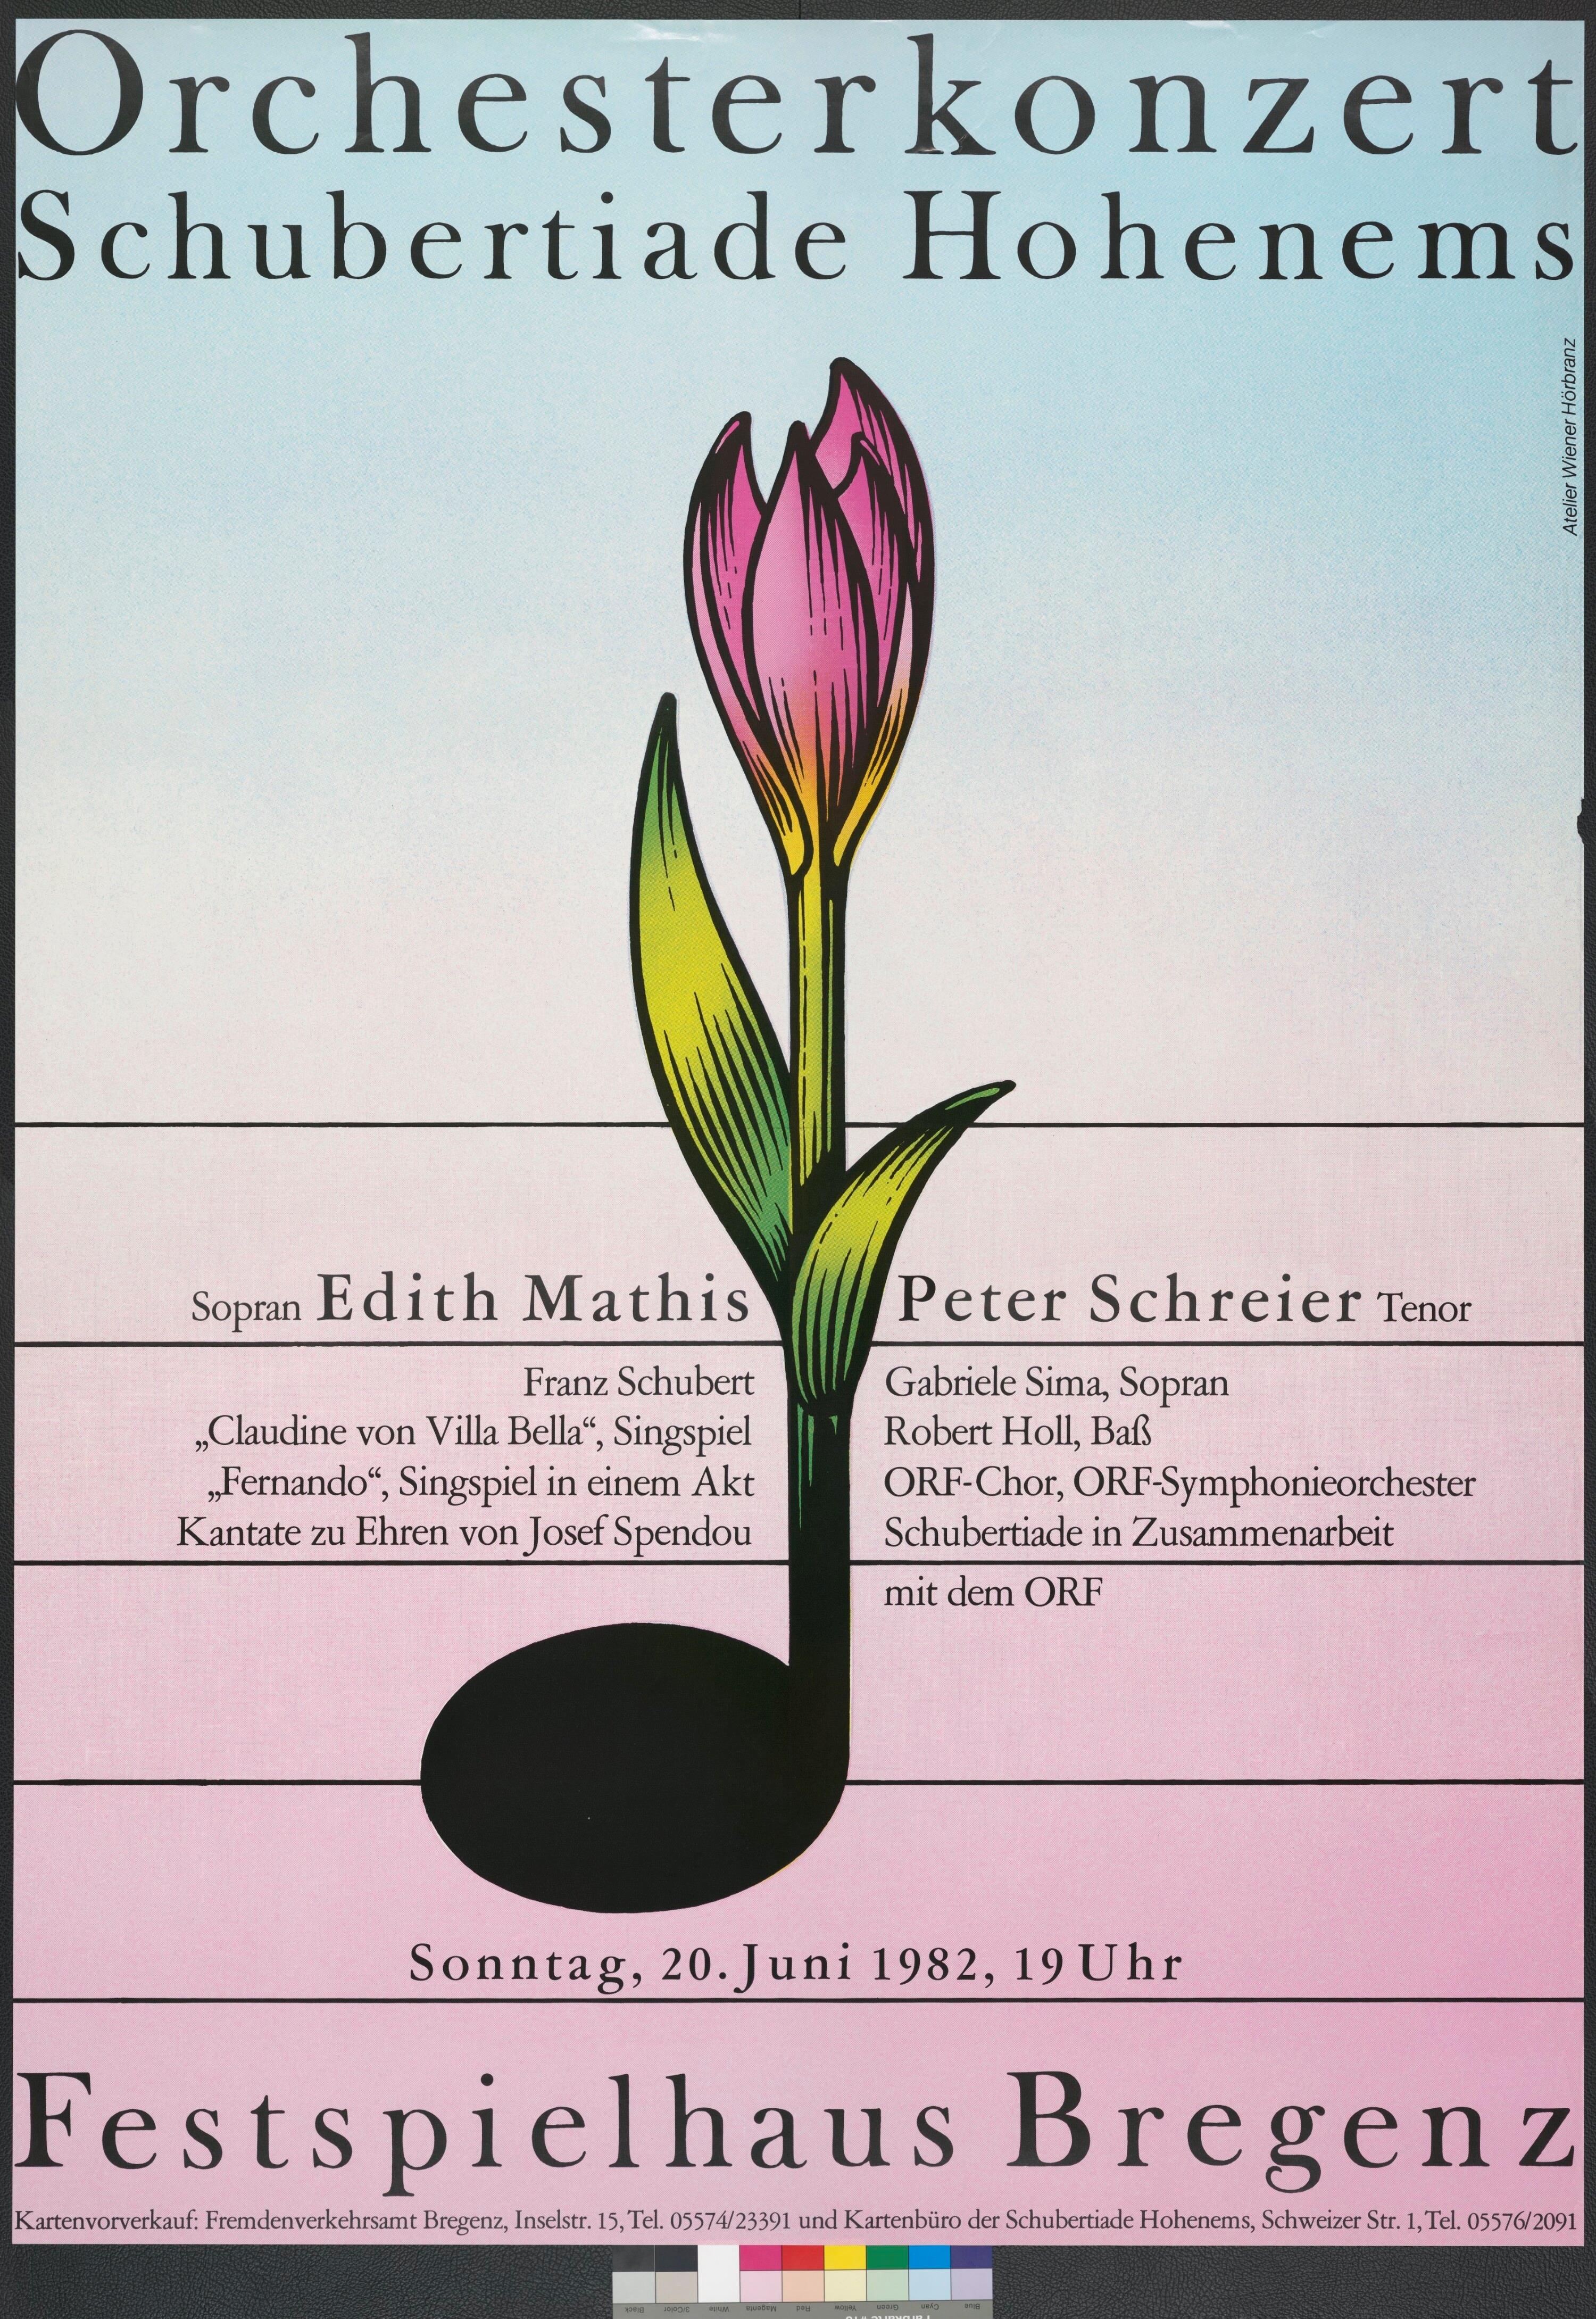 Plakat für Konzert der Schubertiade Hohenems im Festspielhaus Bregenz></div>


    <hr>
    <div class=